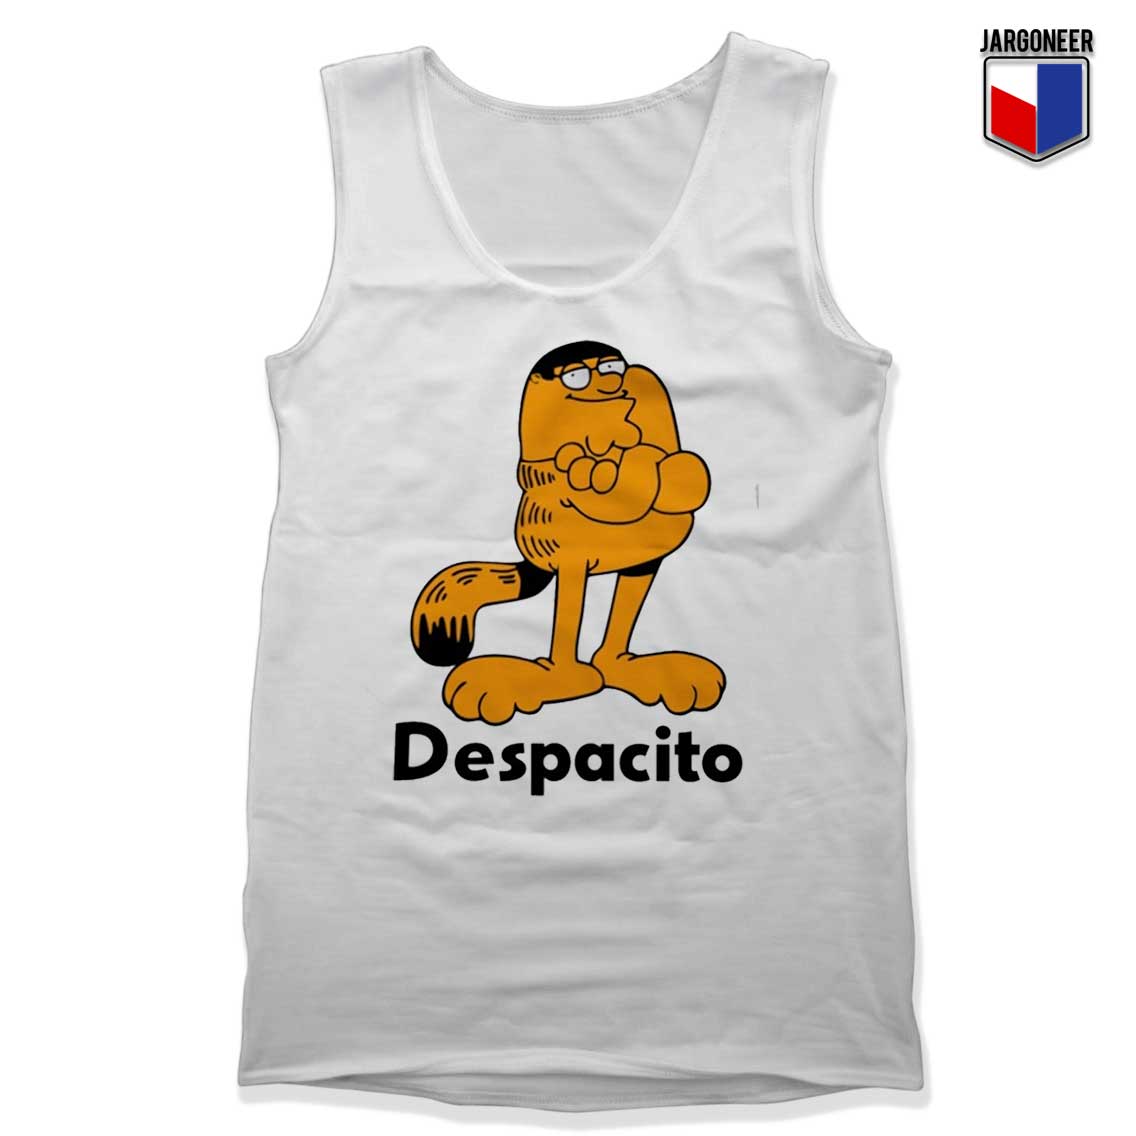 Buy Now Garfield Despacito Tank Top